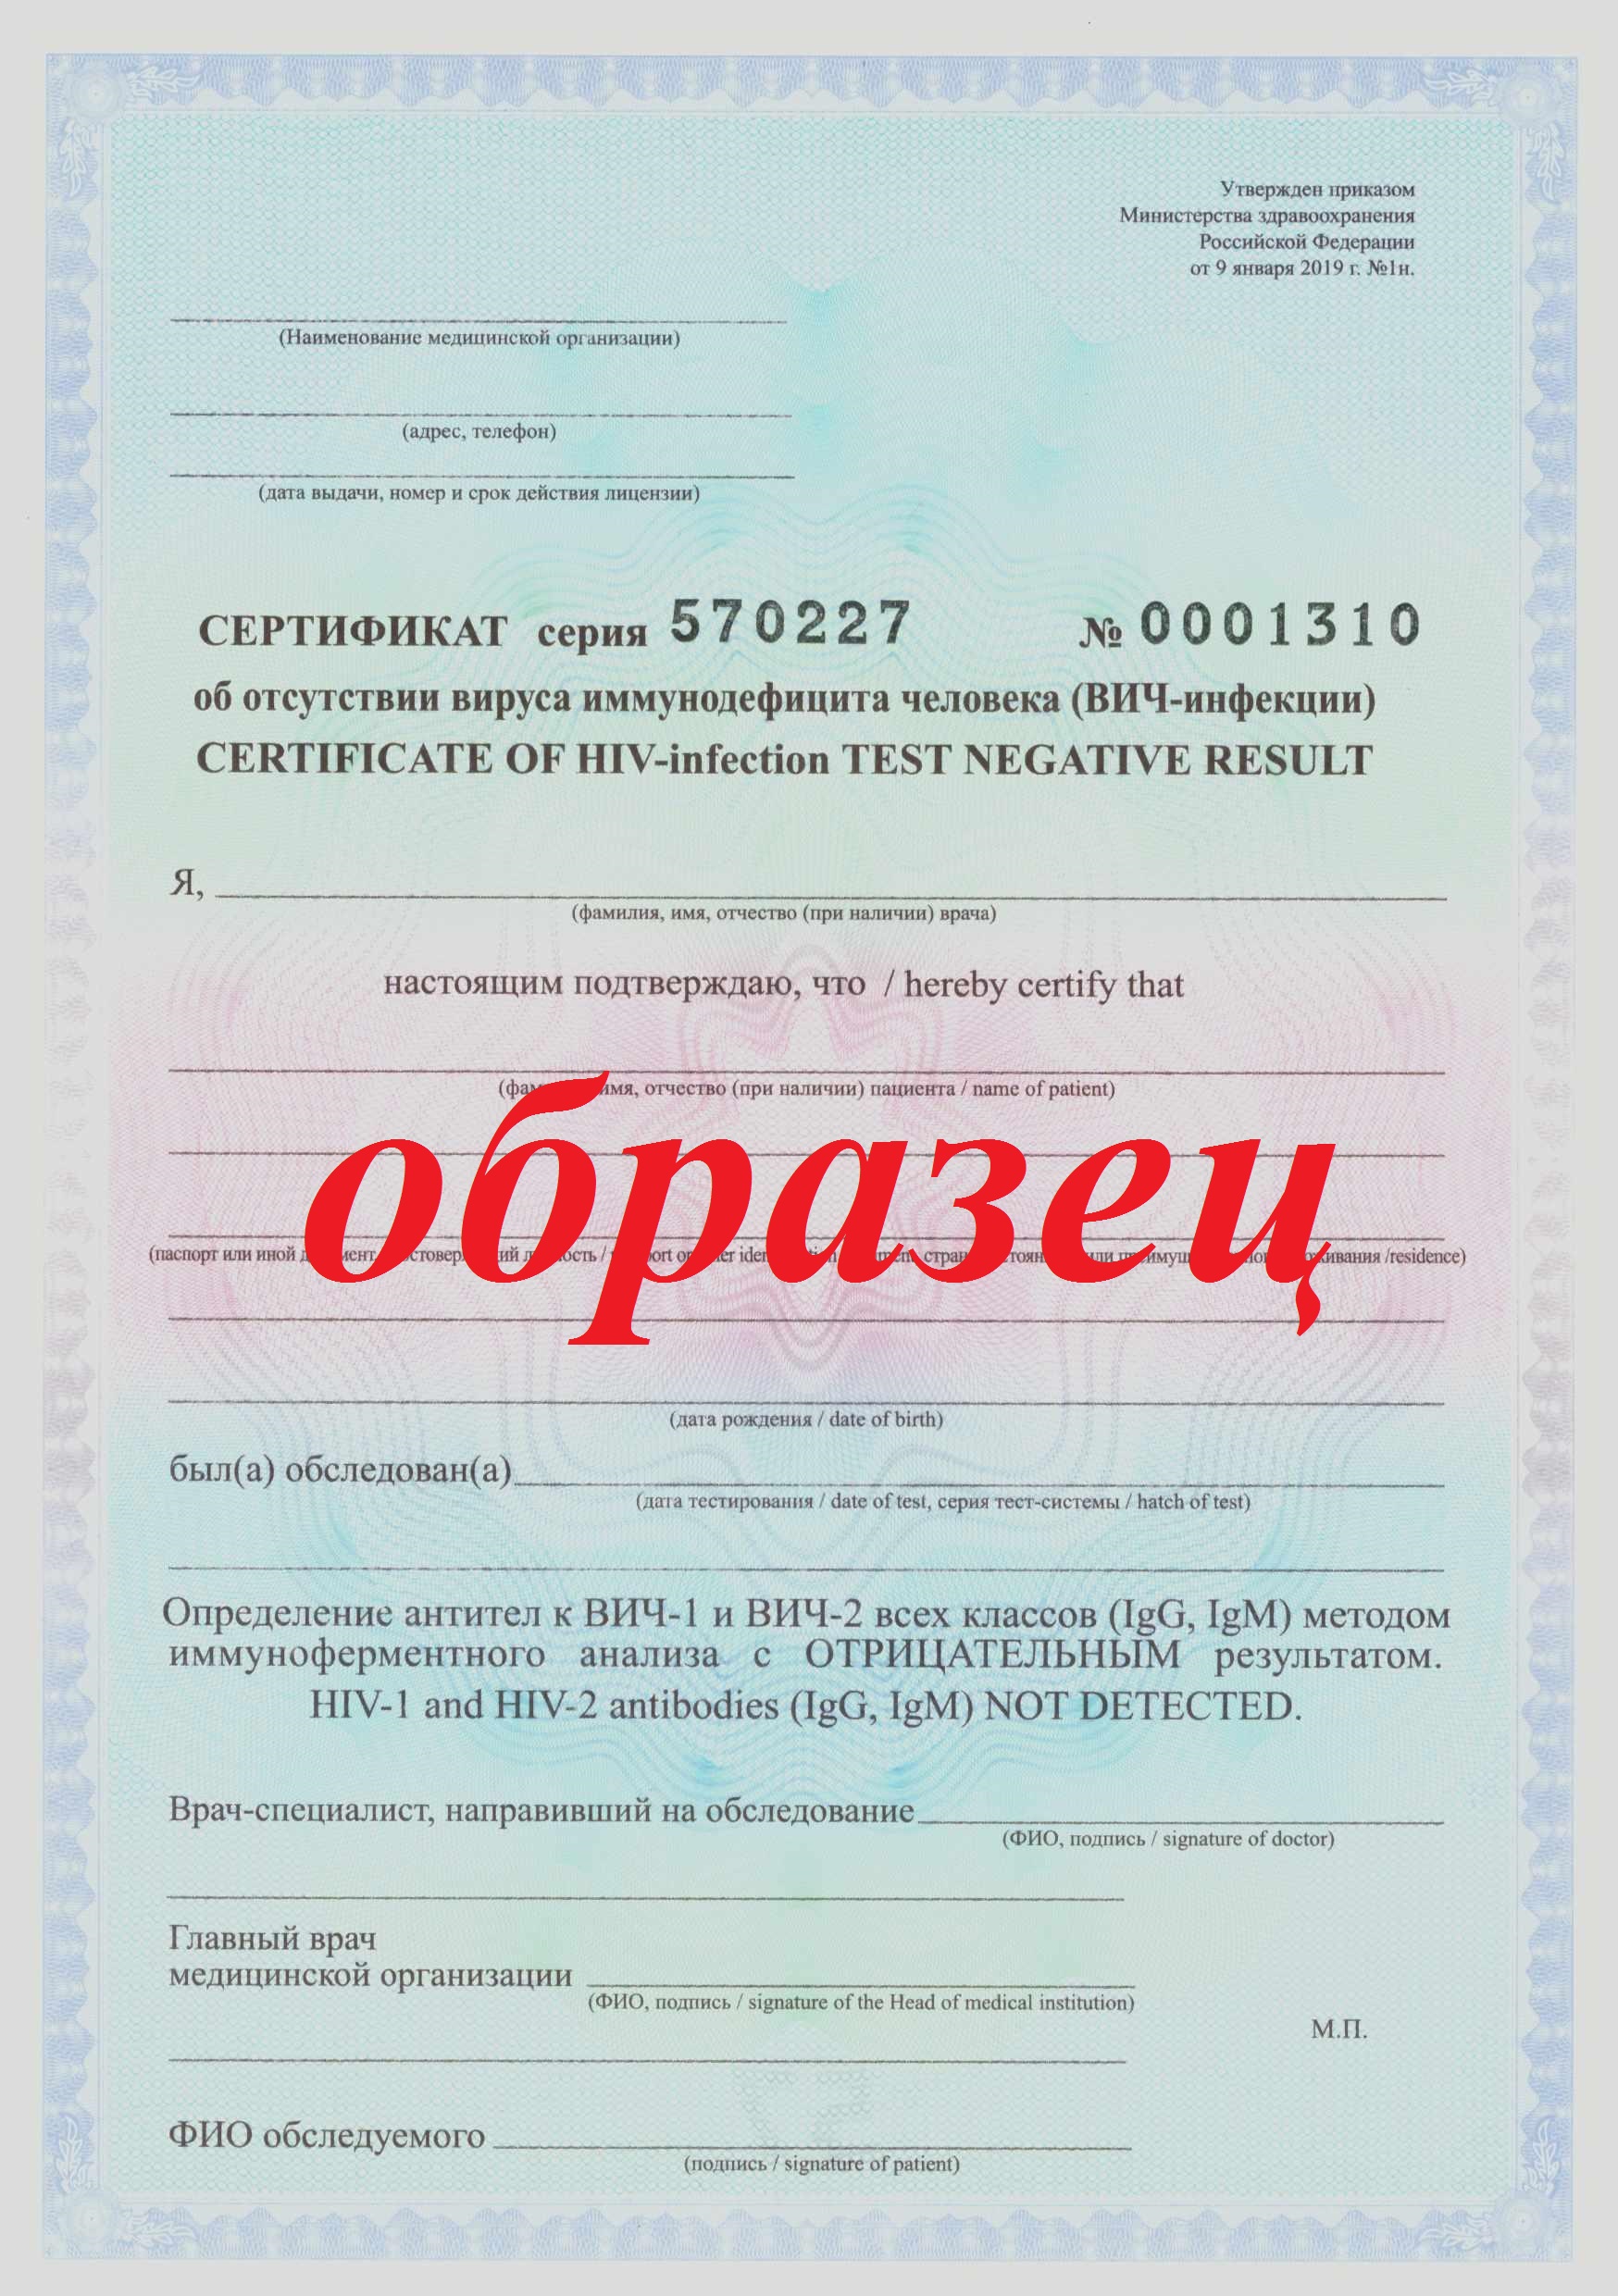 certificate 2